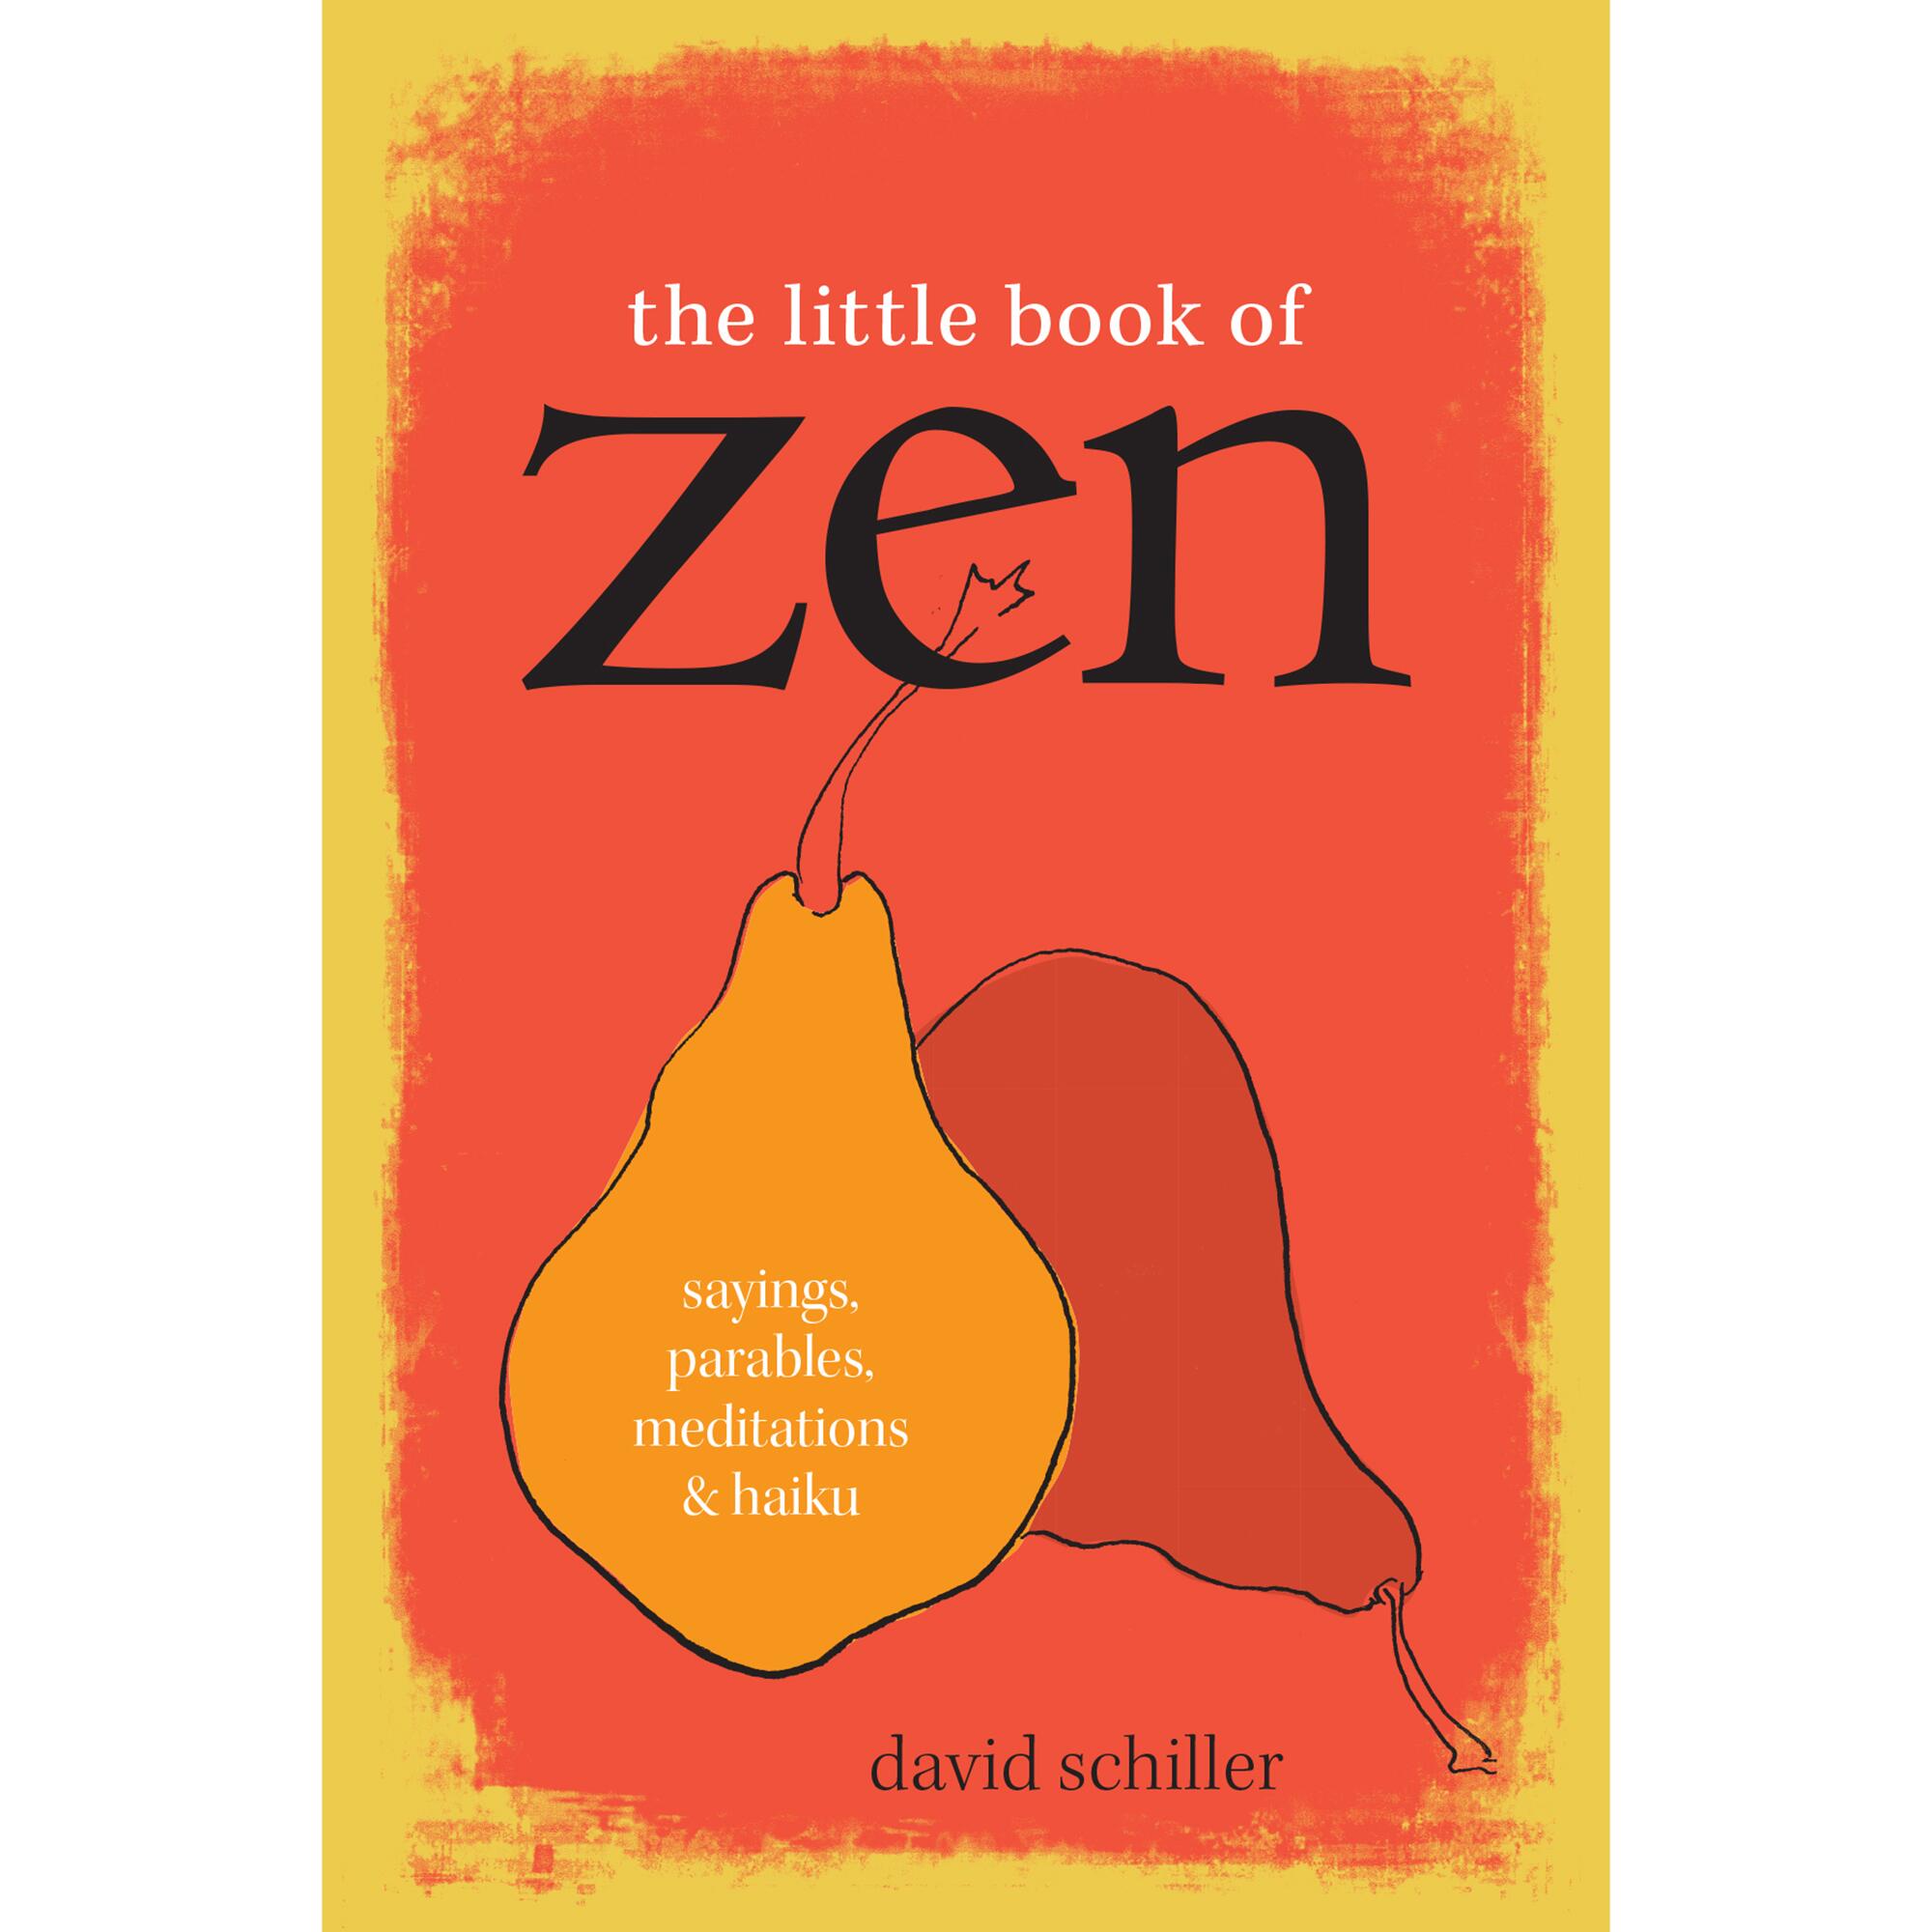 "The Little Book of Zen"